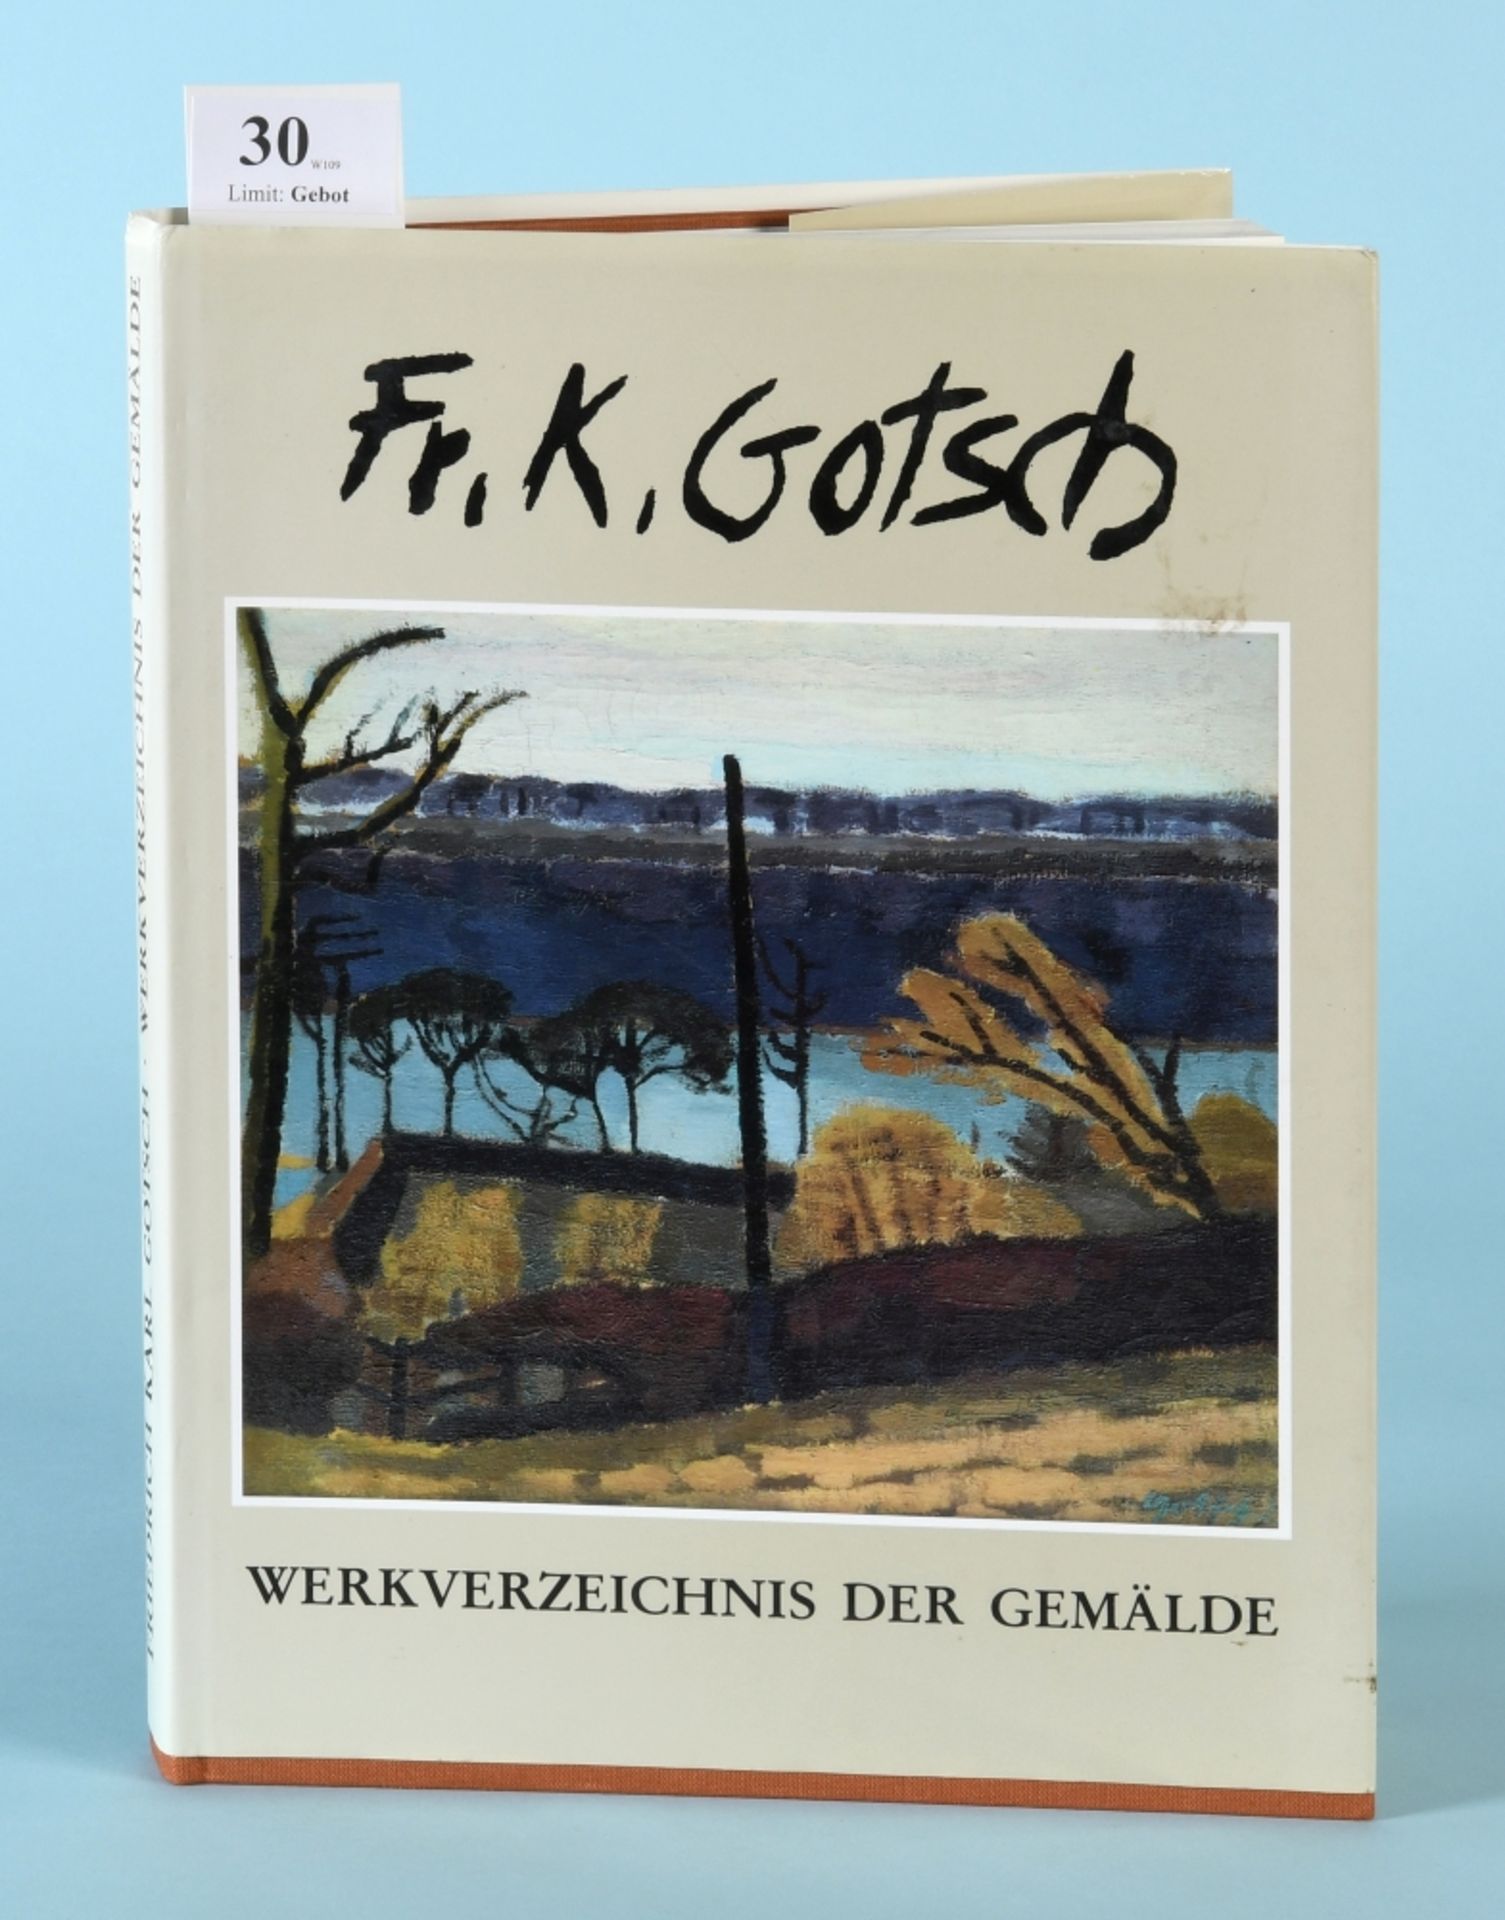 Goeritz, Peter u.a. "Friedrich Karl Gotsch 1900-1984 - Werksverzeichnis der Gemälde"